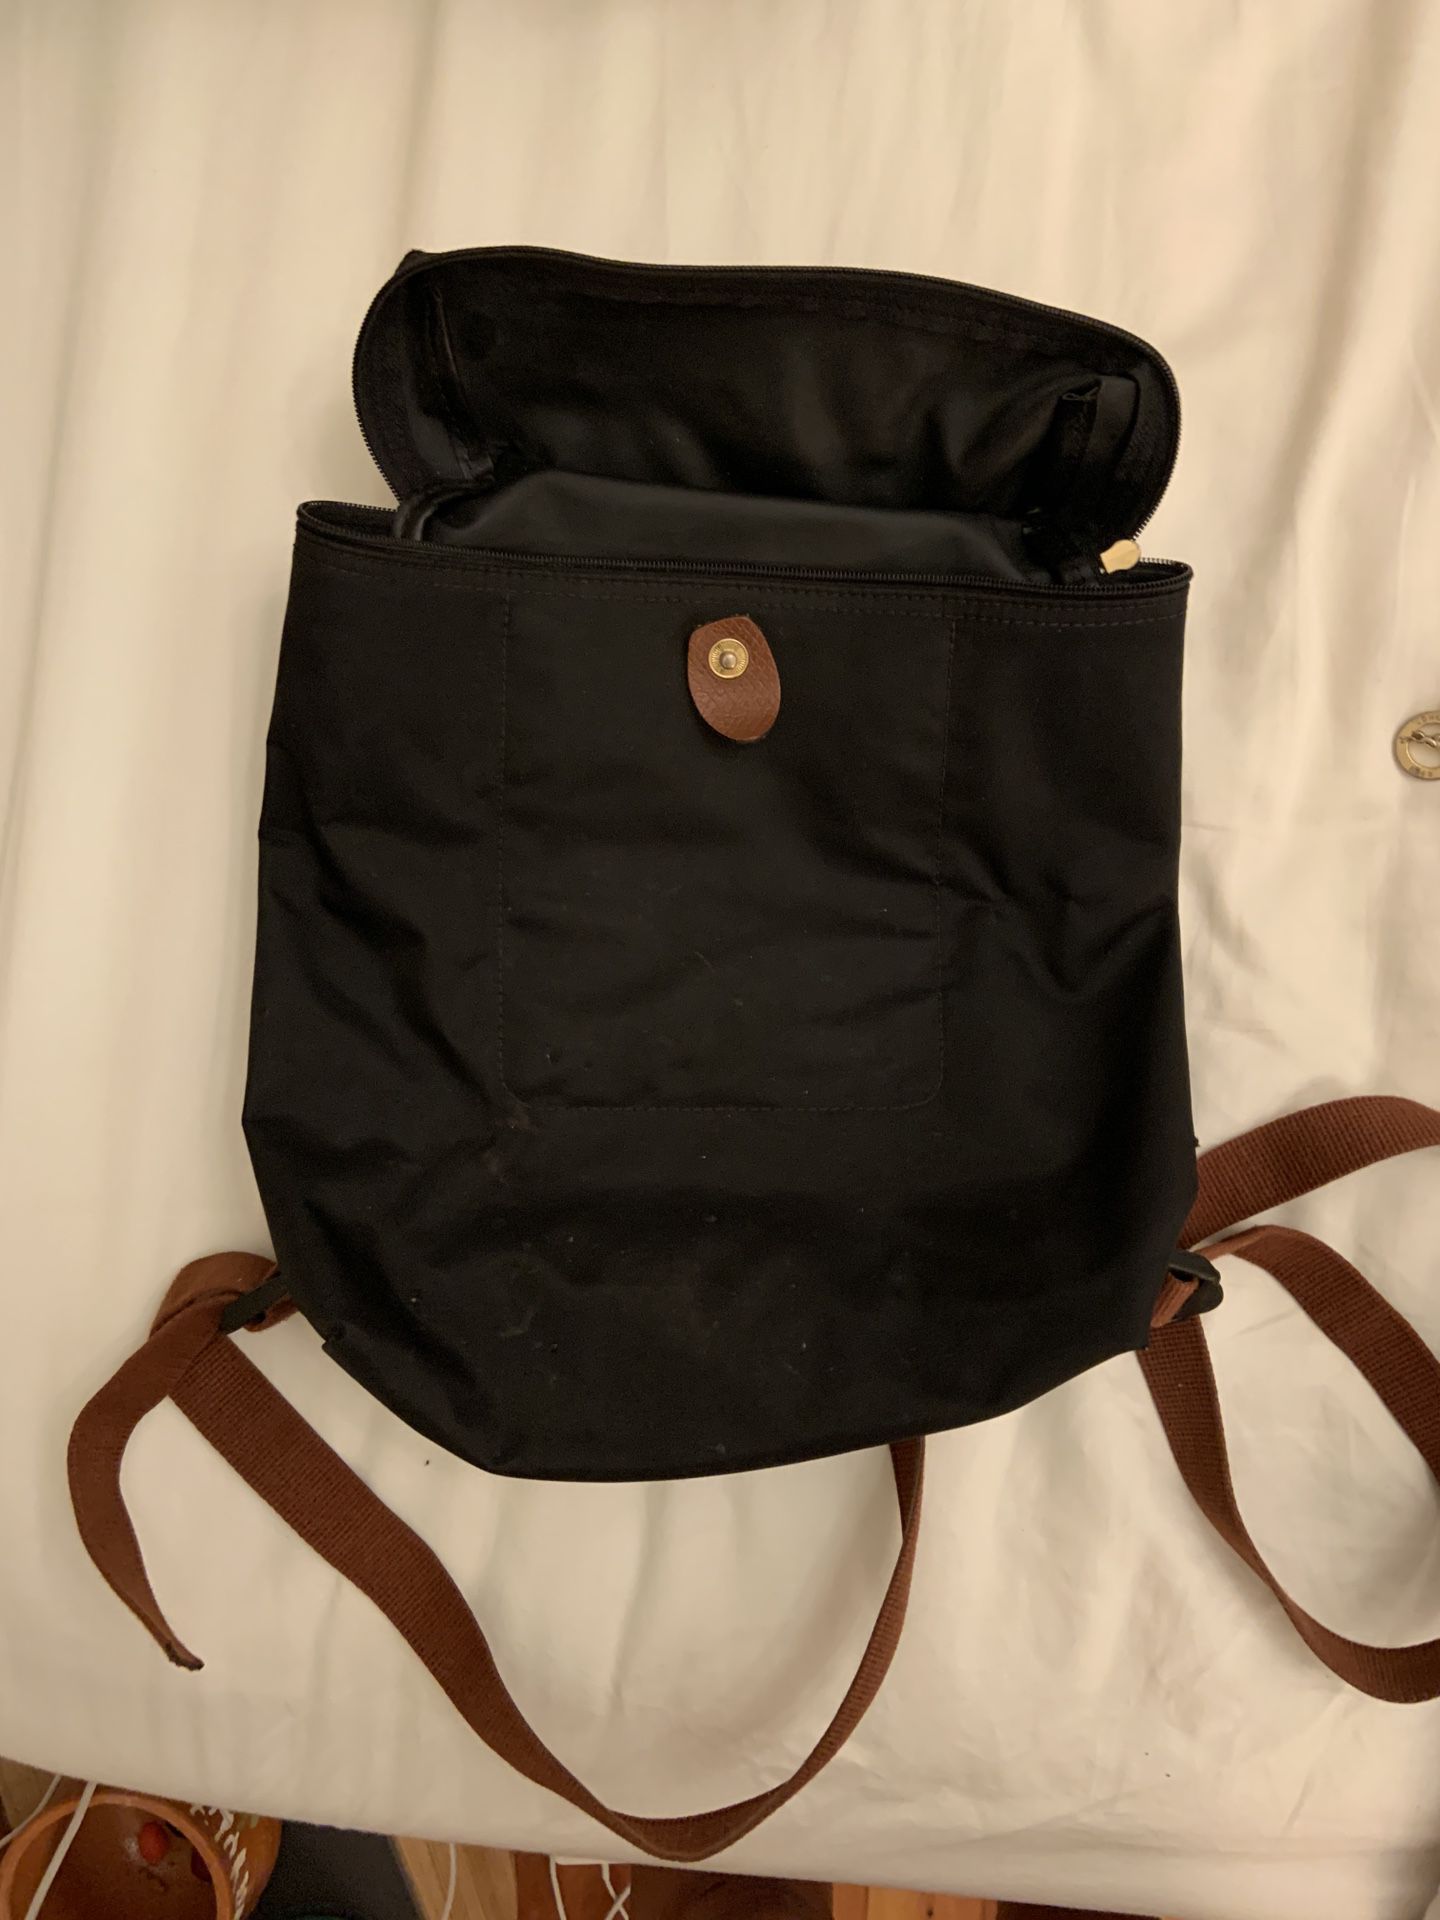 Longchamp Le Pliage Backpack Black